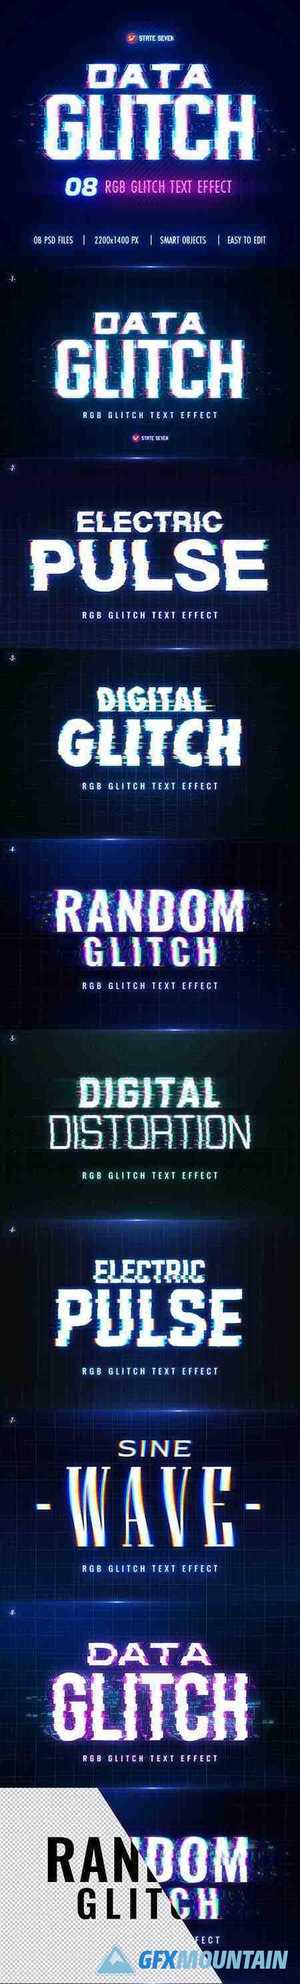 Glitch Text Effect 27807032